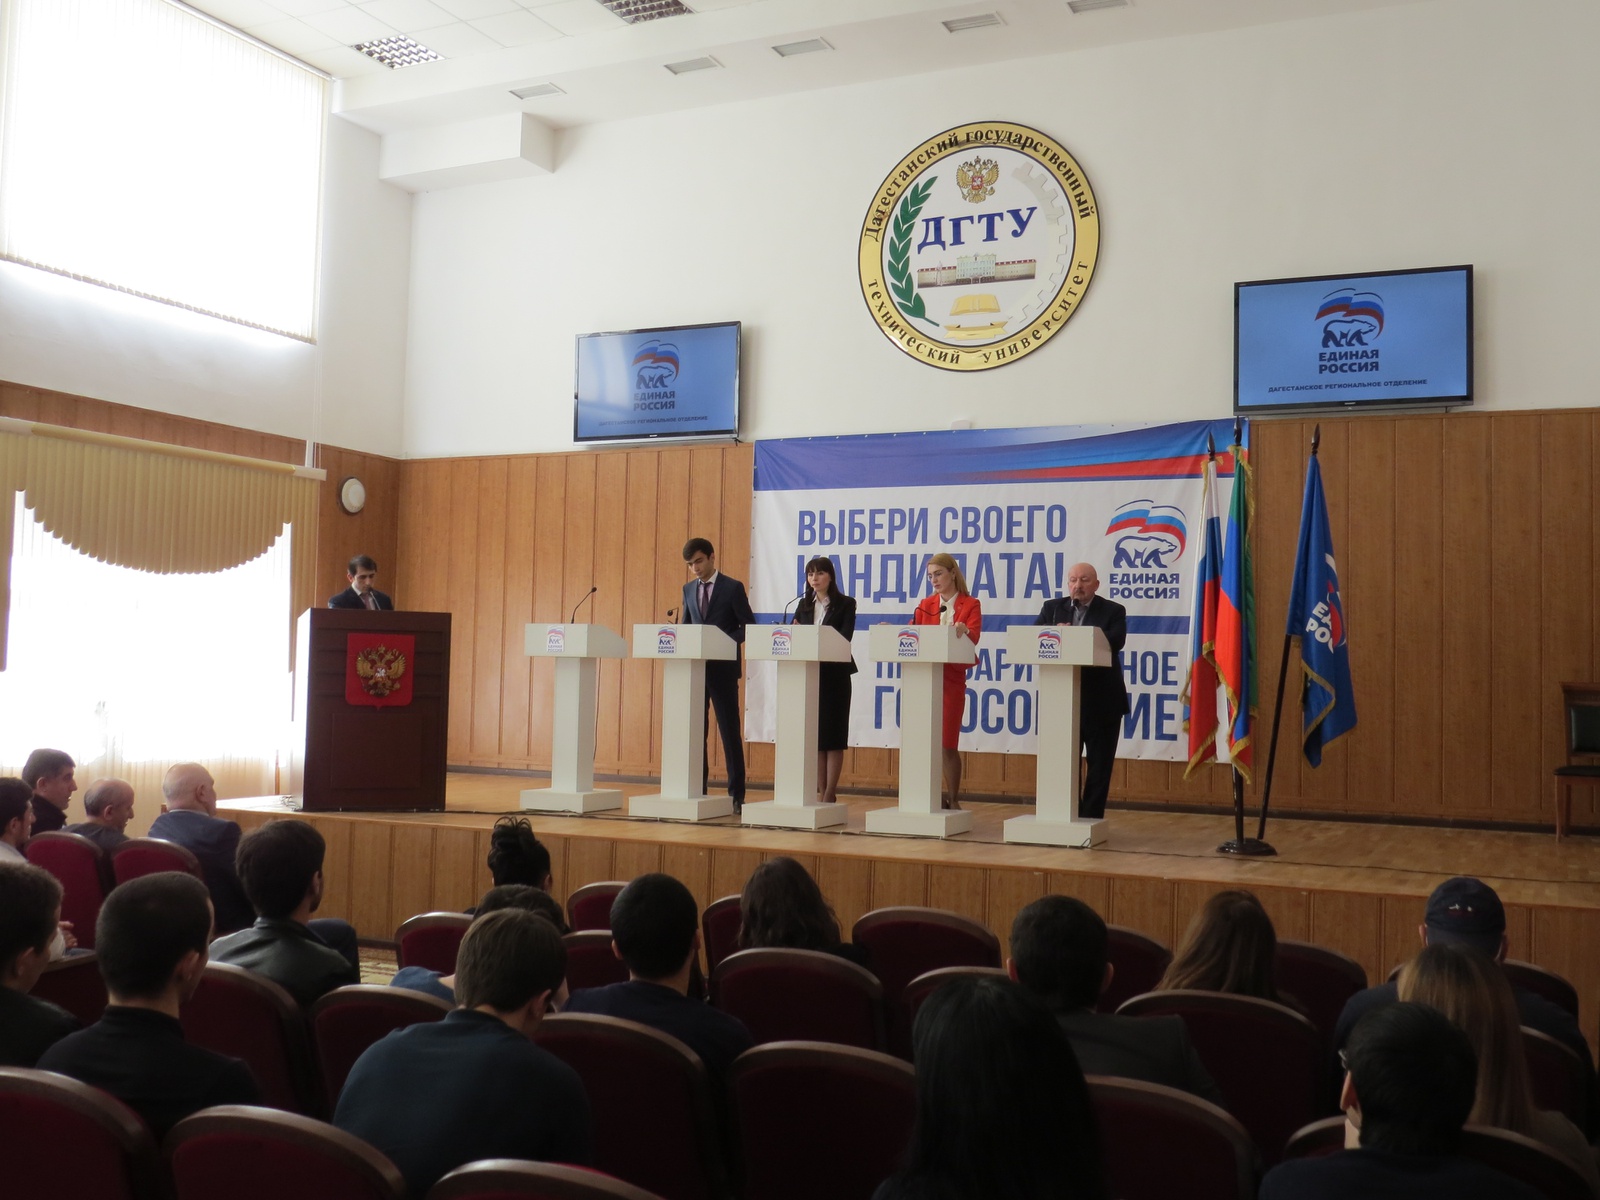   Дебаты участников предварительного голосования в регионах РФ. Дагестан